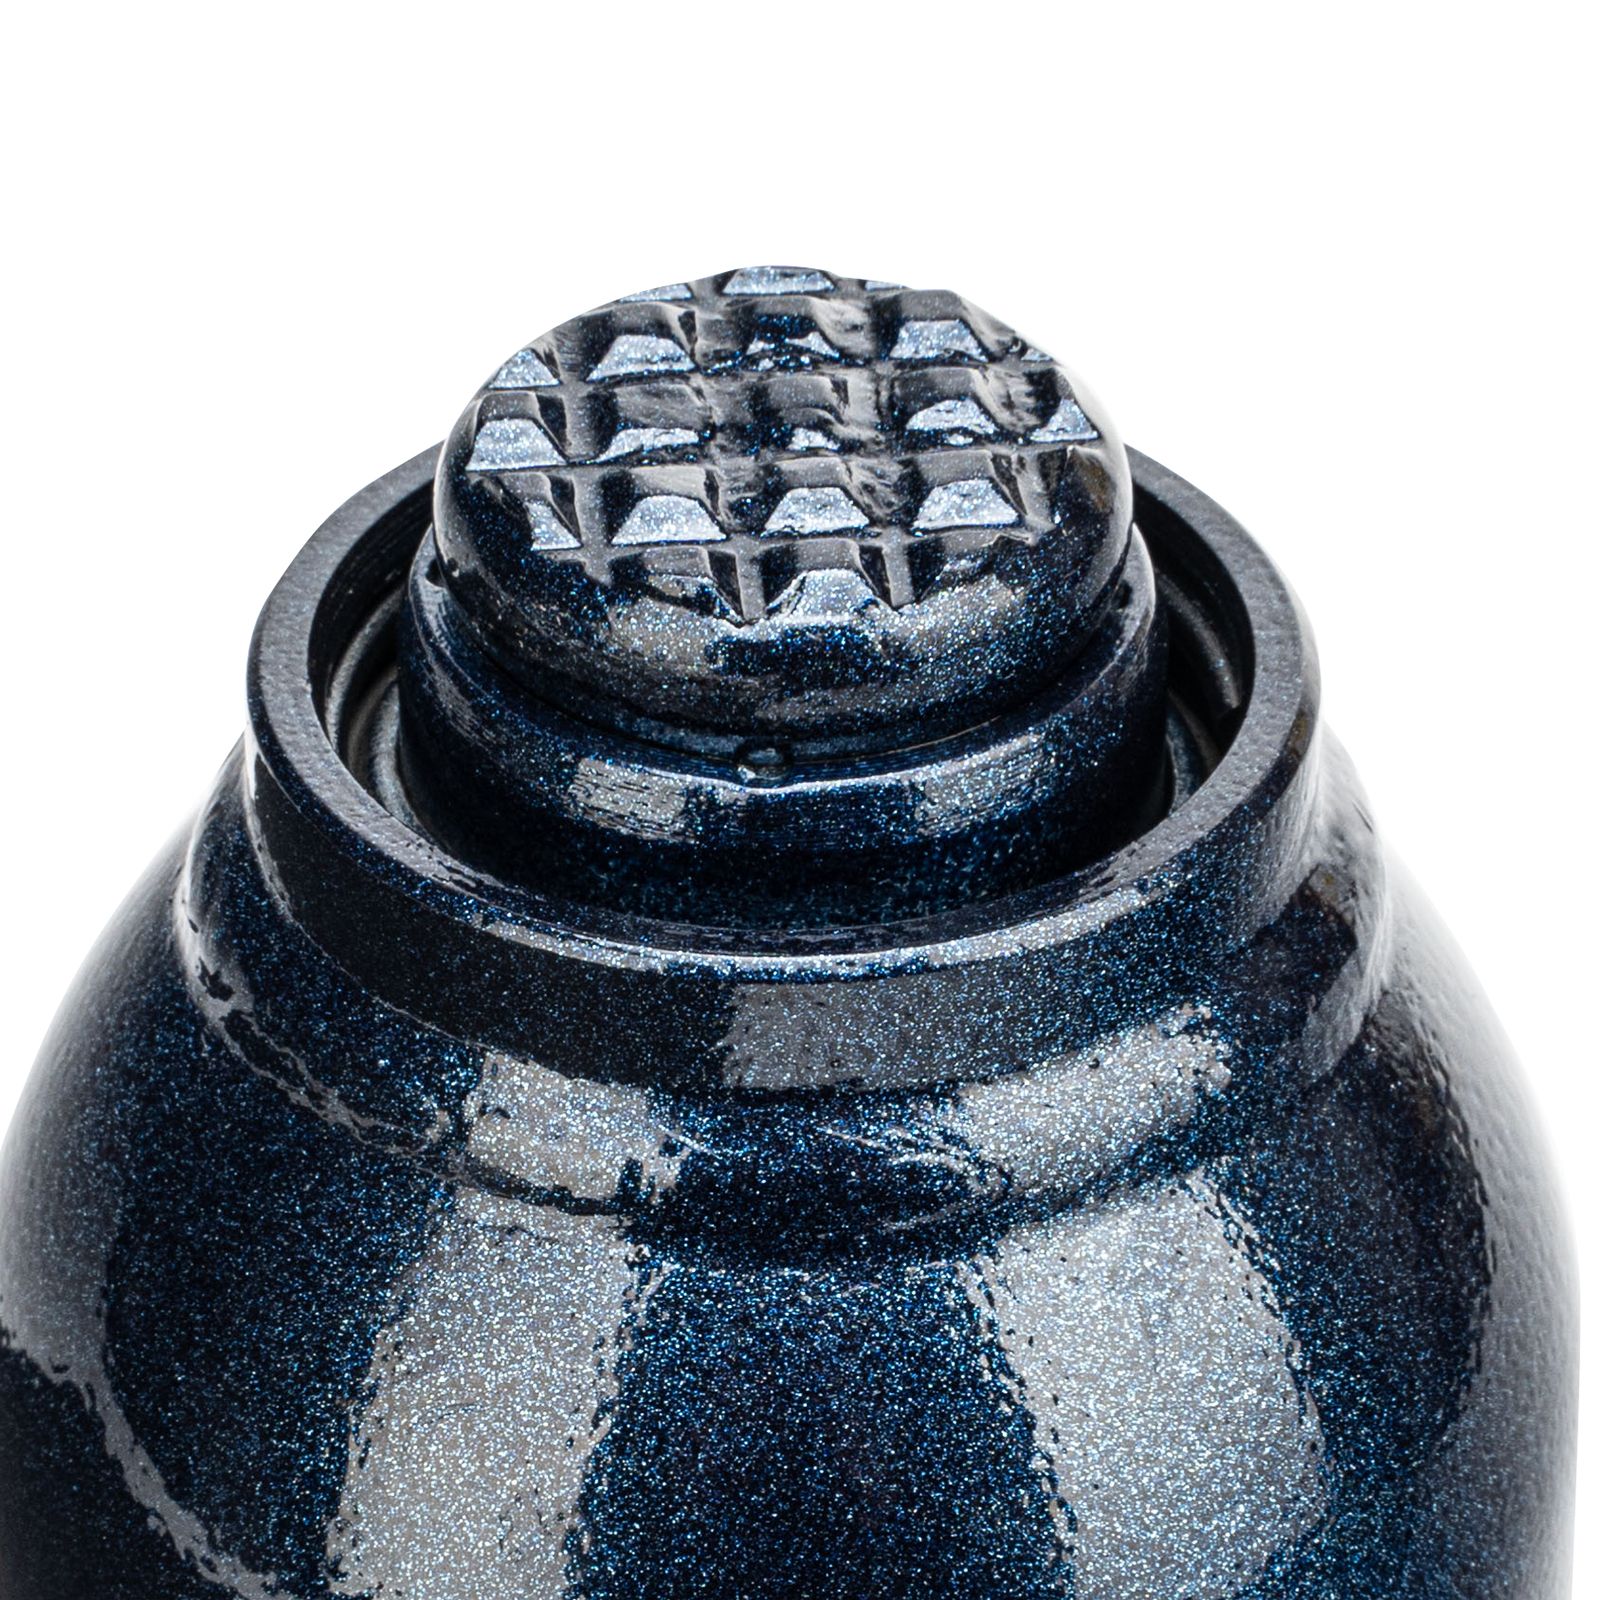 Домкрат гидравлический бутылочный, 5 т, h подъема 207-404 мм Stels 